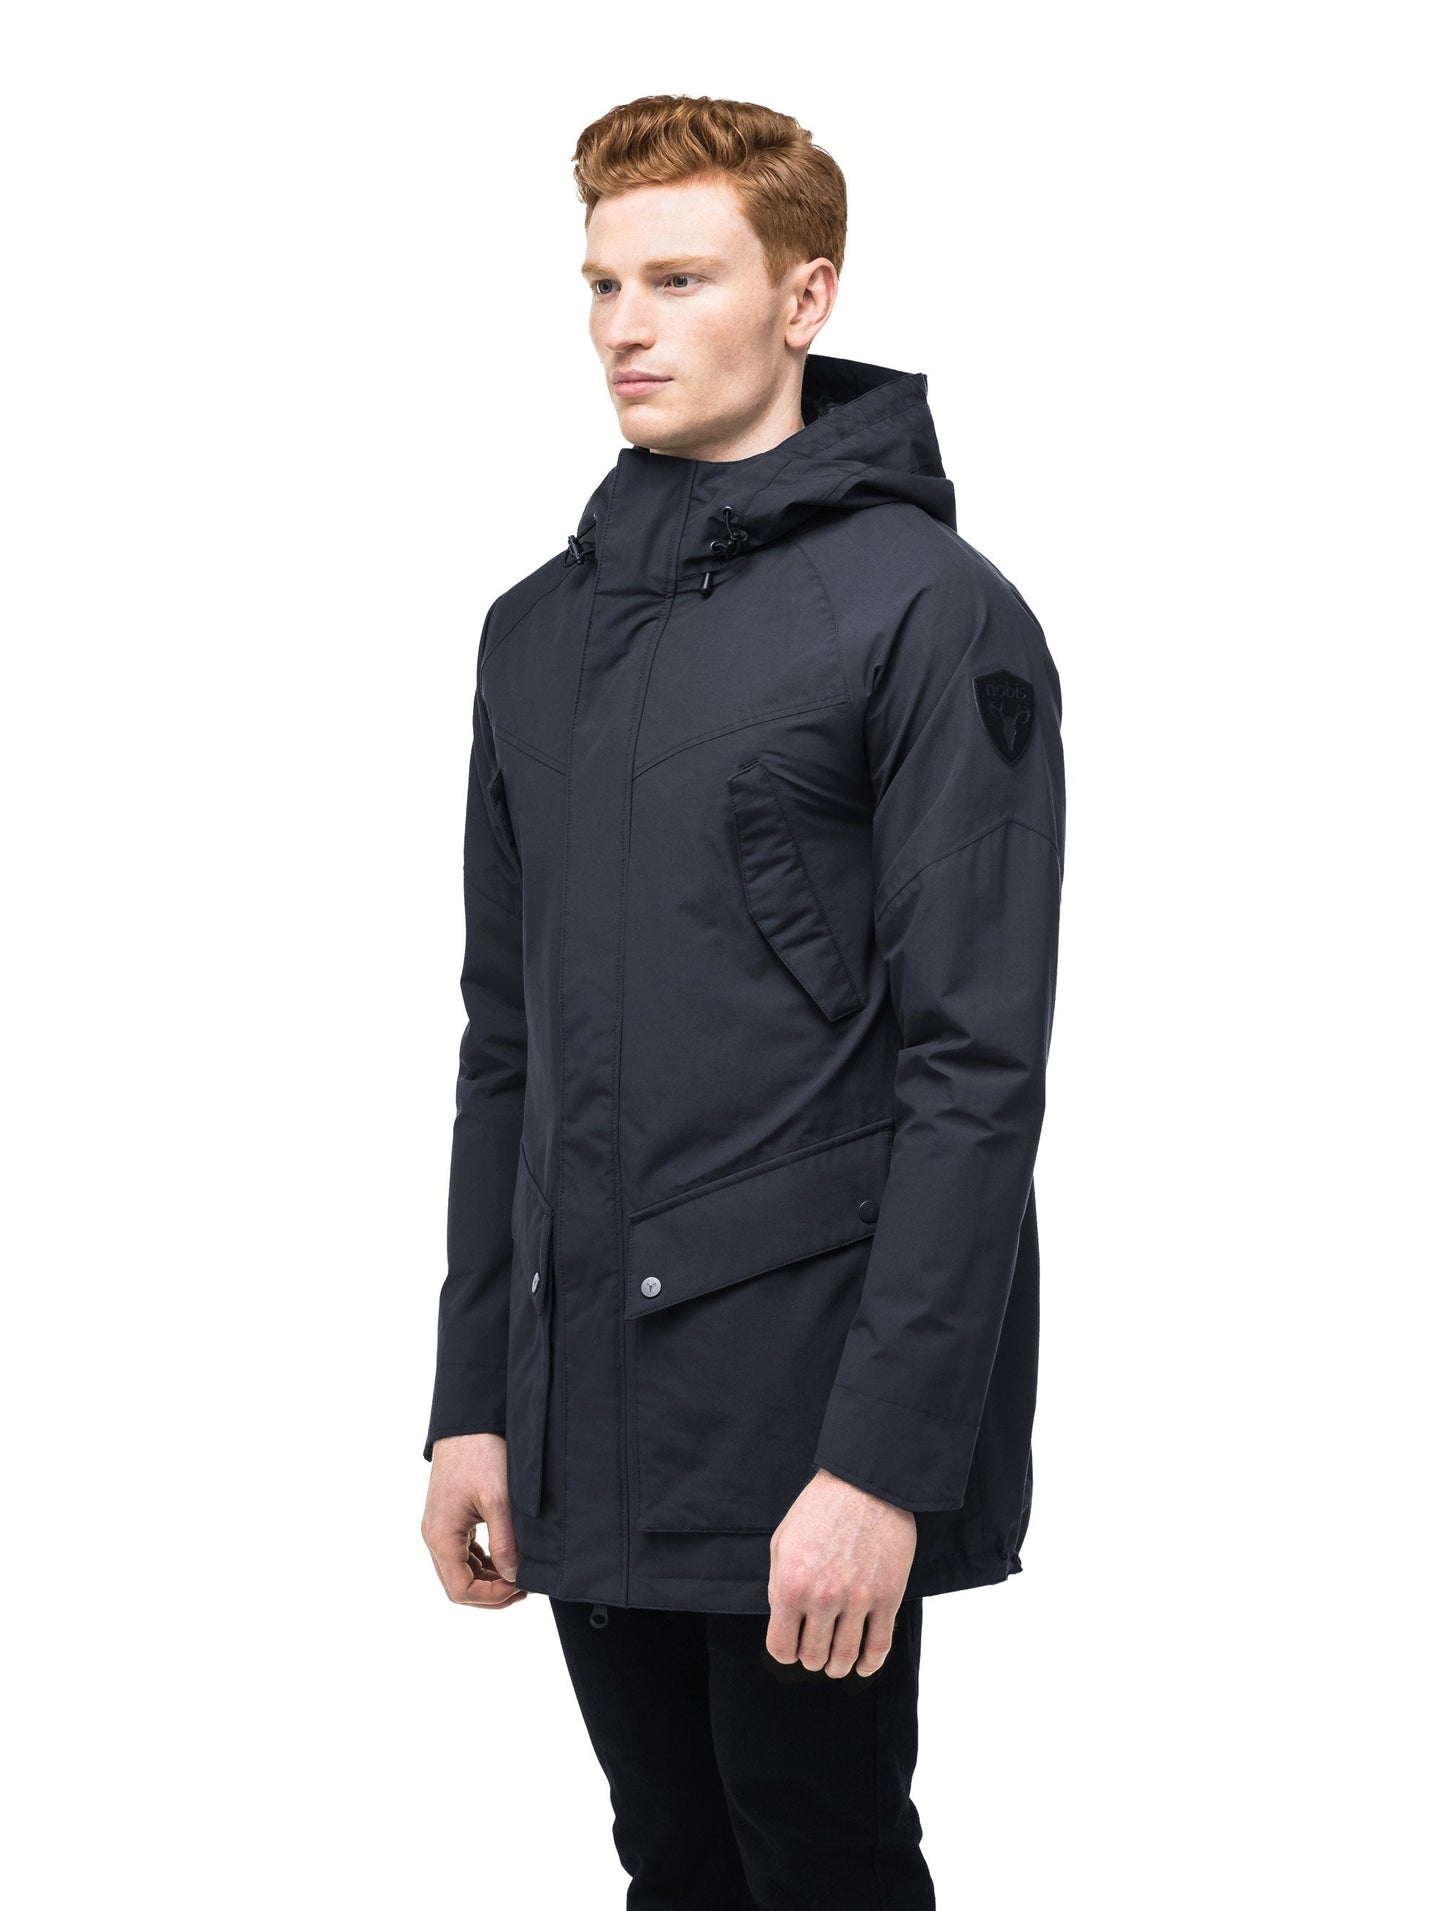 Men's hooded rain coat with hood in Navy